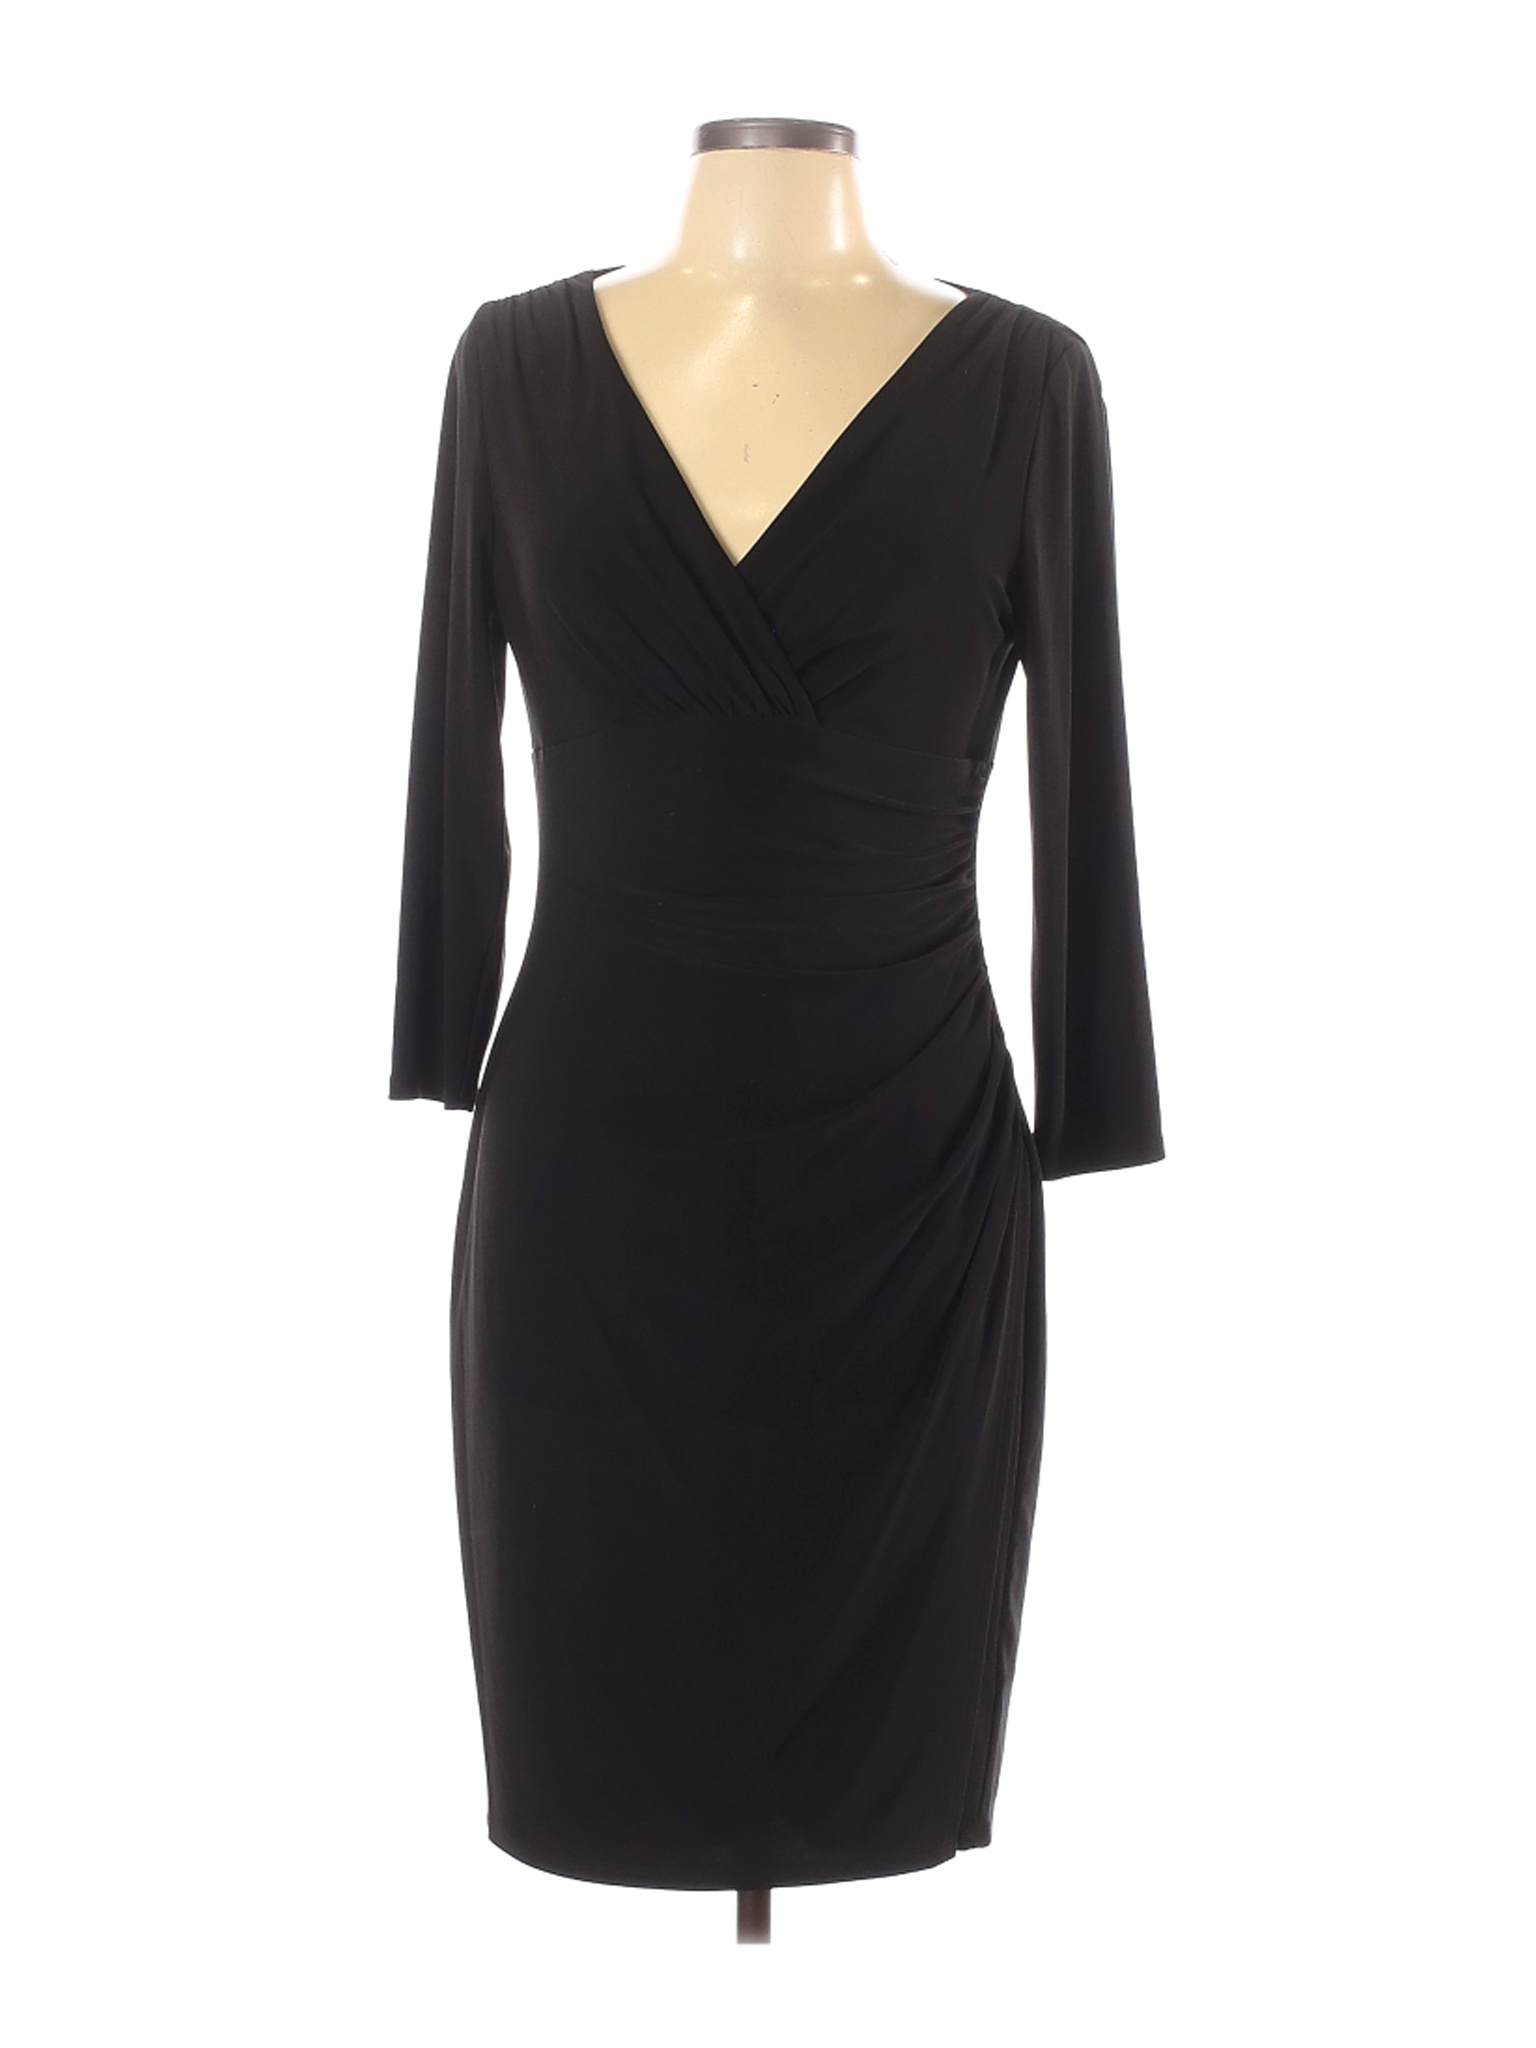 Lauren by Ralph Lauren Women Black Casual Dress 10 | eBay